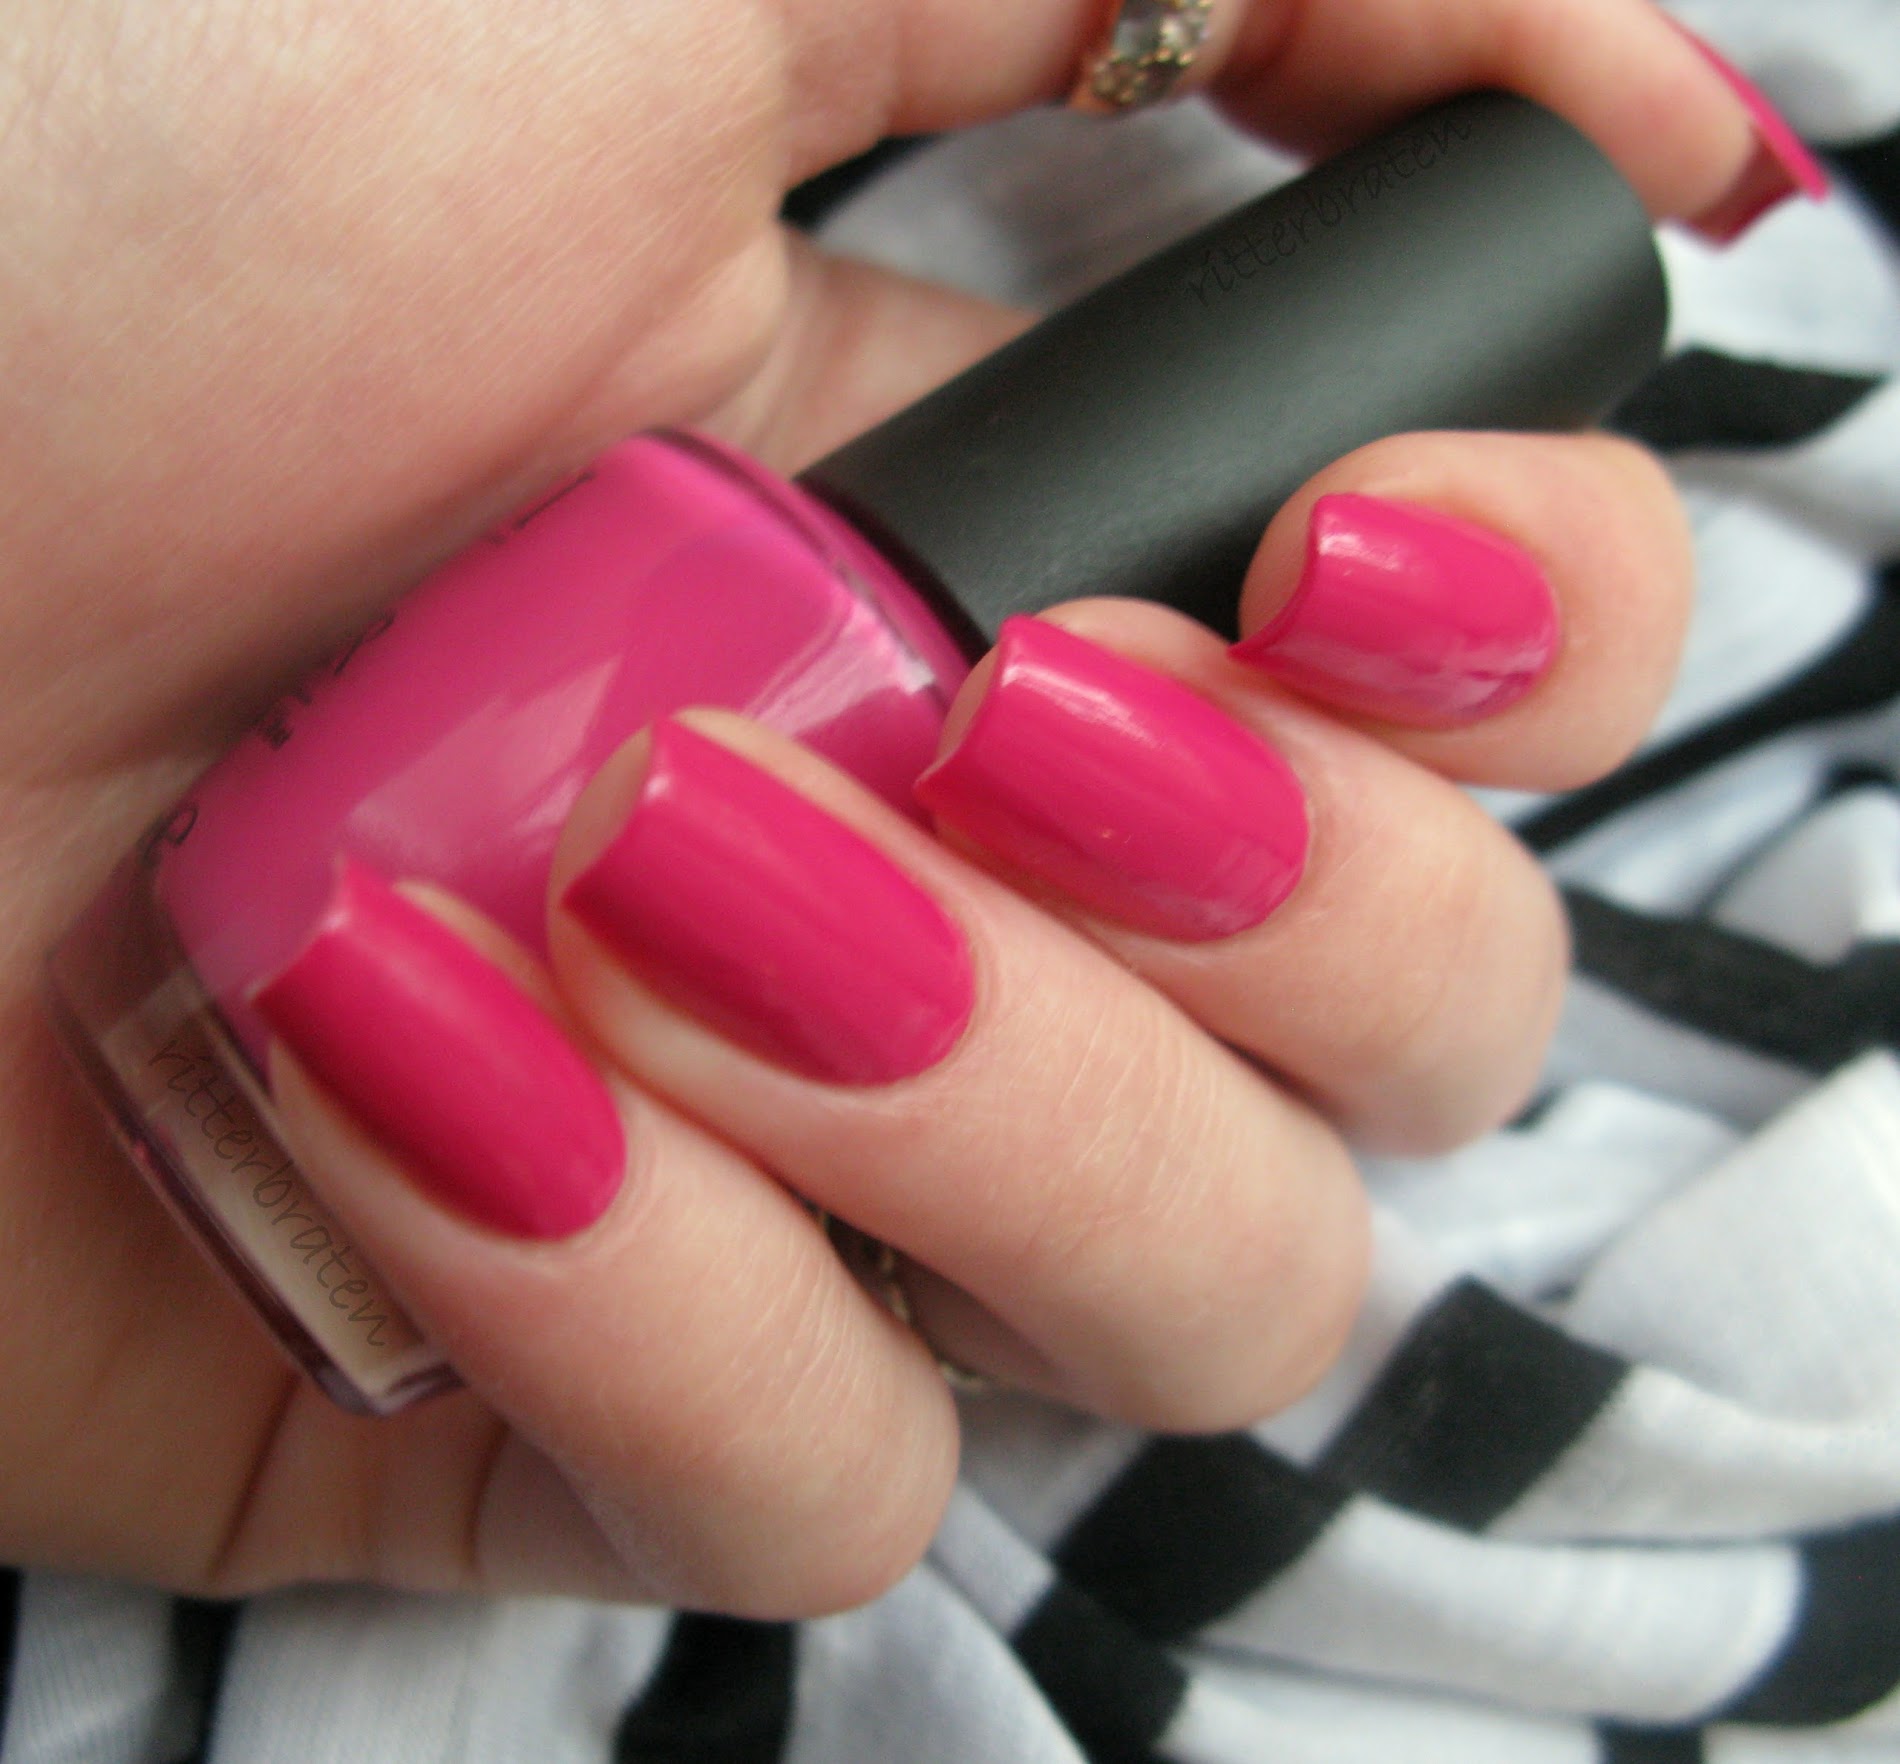 OPI Pink Flamenco nail polish swatch